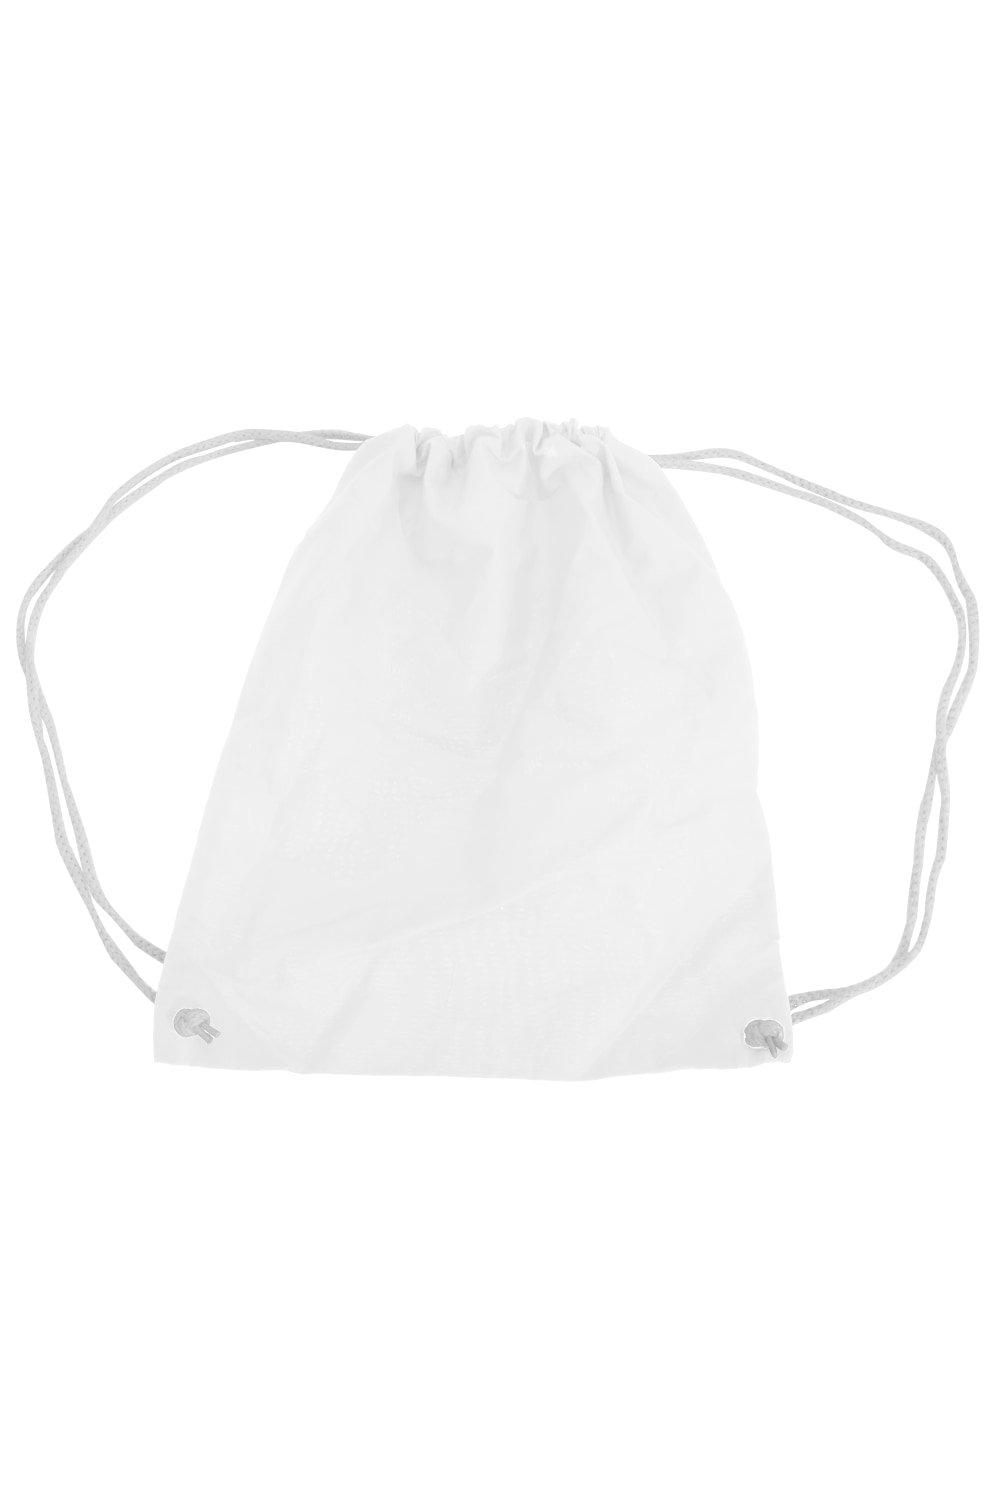 цена Хлопковая сумка Gymsac - 12 литров (2 шт. в упаковке) Westford Mill, белый